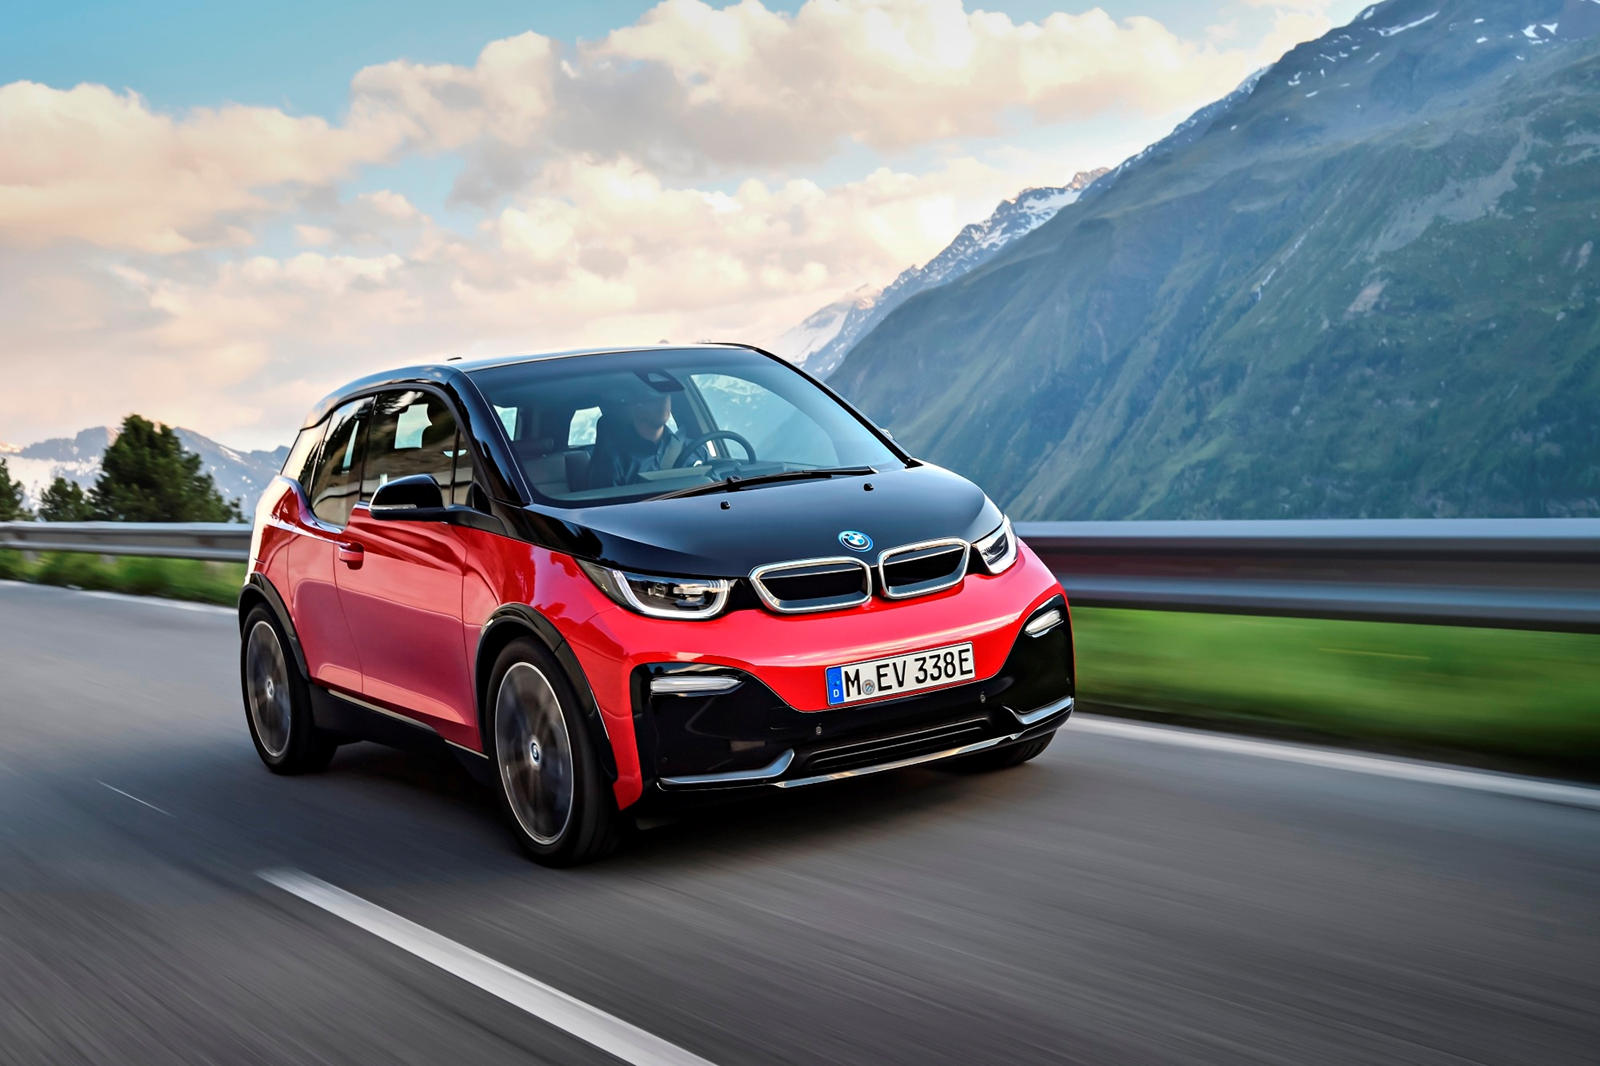 Фактически, Cars UK сообщил, что BMW может удвоить производство i3, если на него будет спрос. Увеличение темпов производства связано с привлекательными предложениями, предлагаемыми в процессе восстановления от Covid-19.